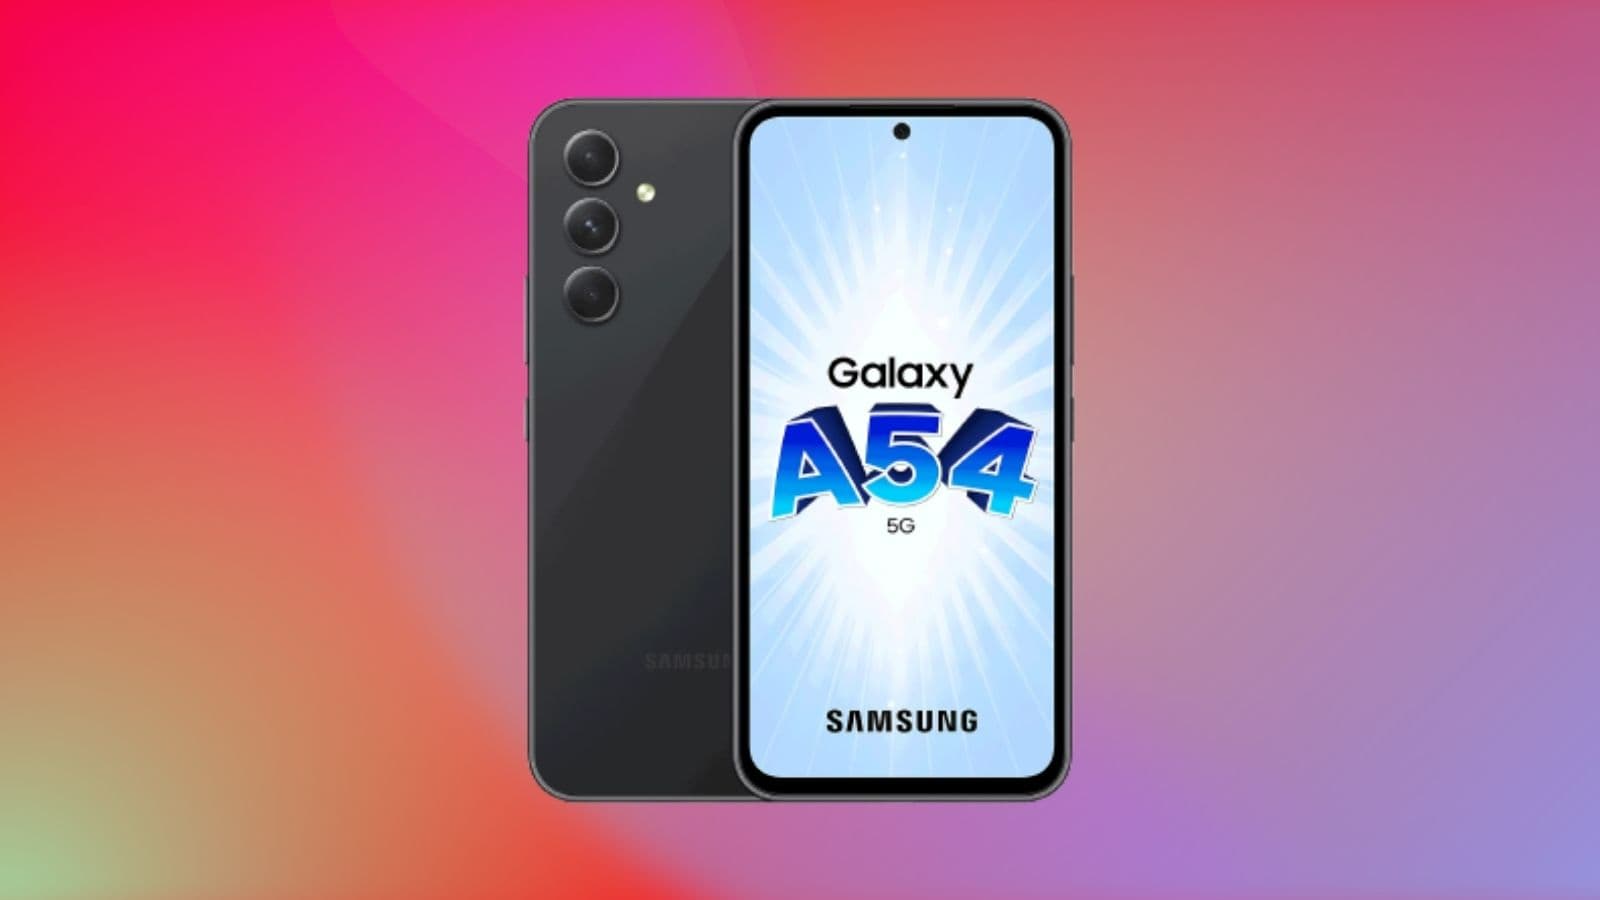 Samsung-vous-offre-une-double-remise-inedite-sur-le-Galaxy-A54-5G -1676888.jpg